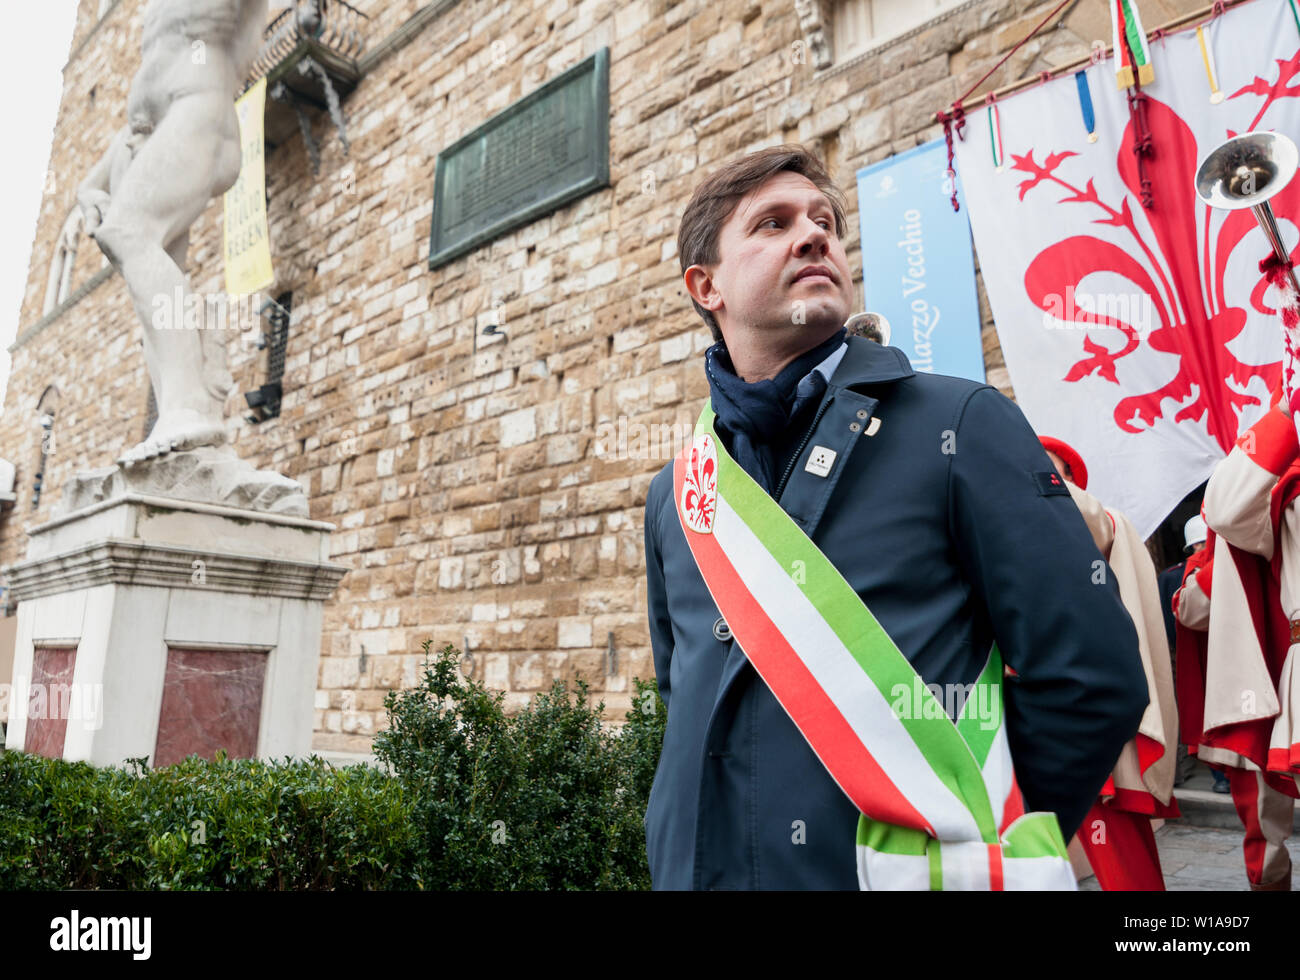 Florenz, Toskana, Italien - 6. Januar 2018: Der Bürgermeister von Florenz Dario Nardella mit bürgermeisterlicher Schärpe während einer öffentlichen Zeremonie im Palazzo Vecchio. Stockfoto